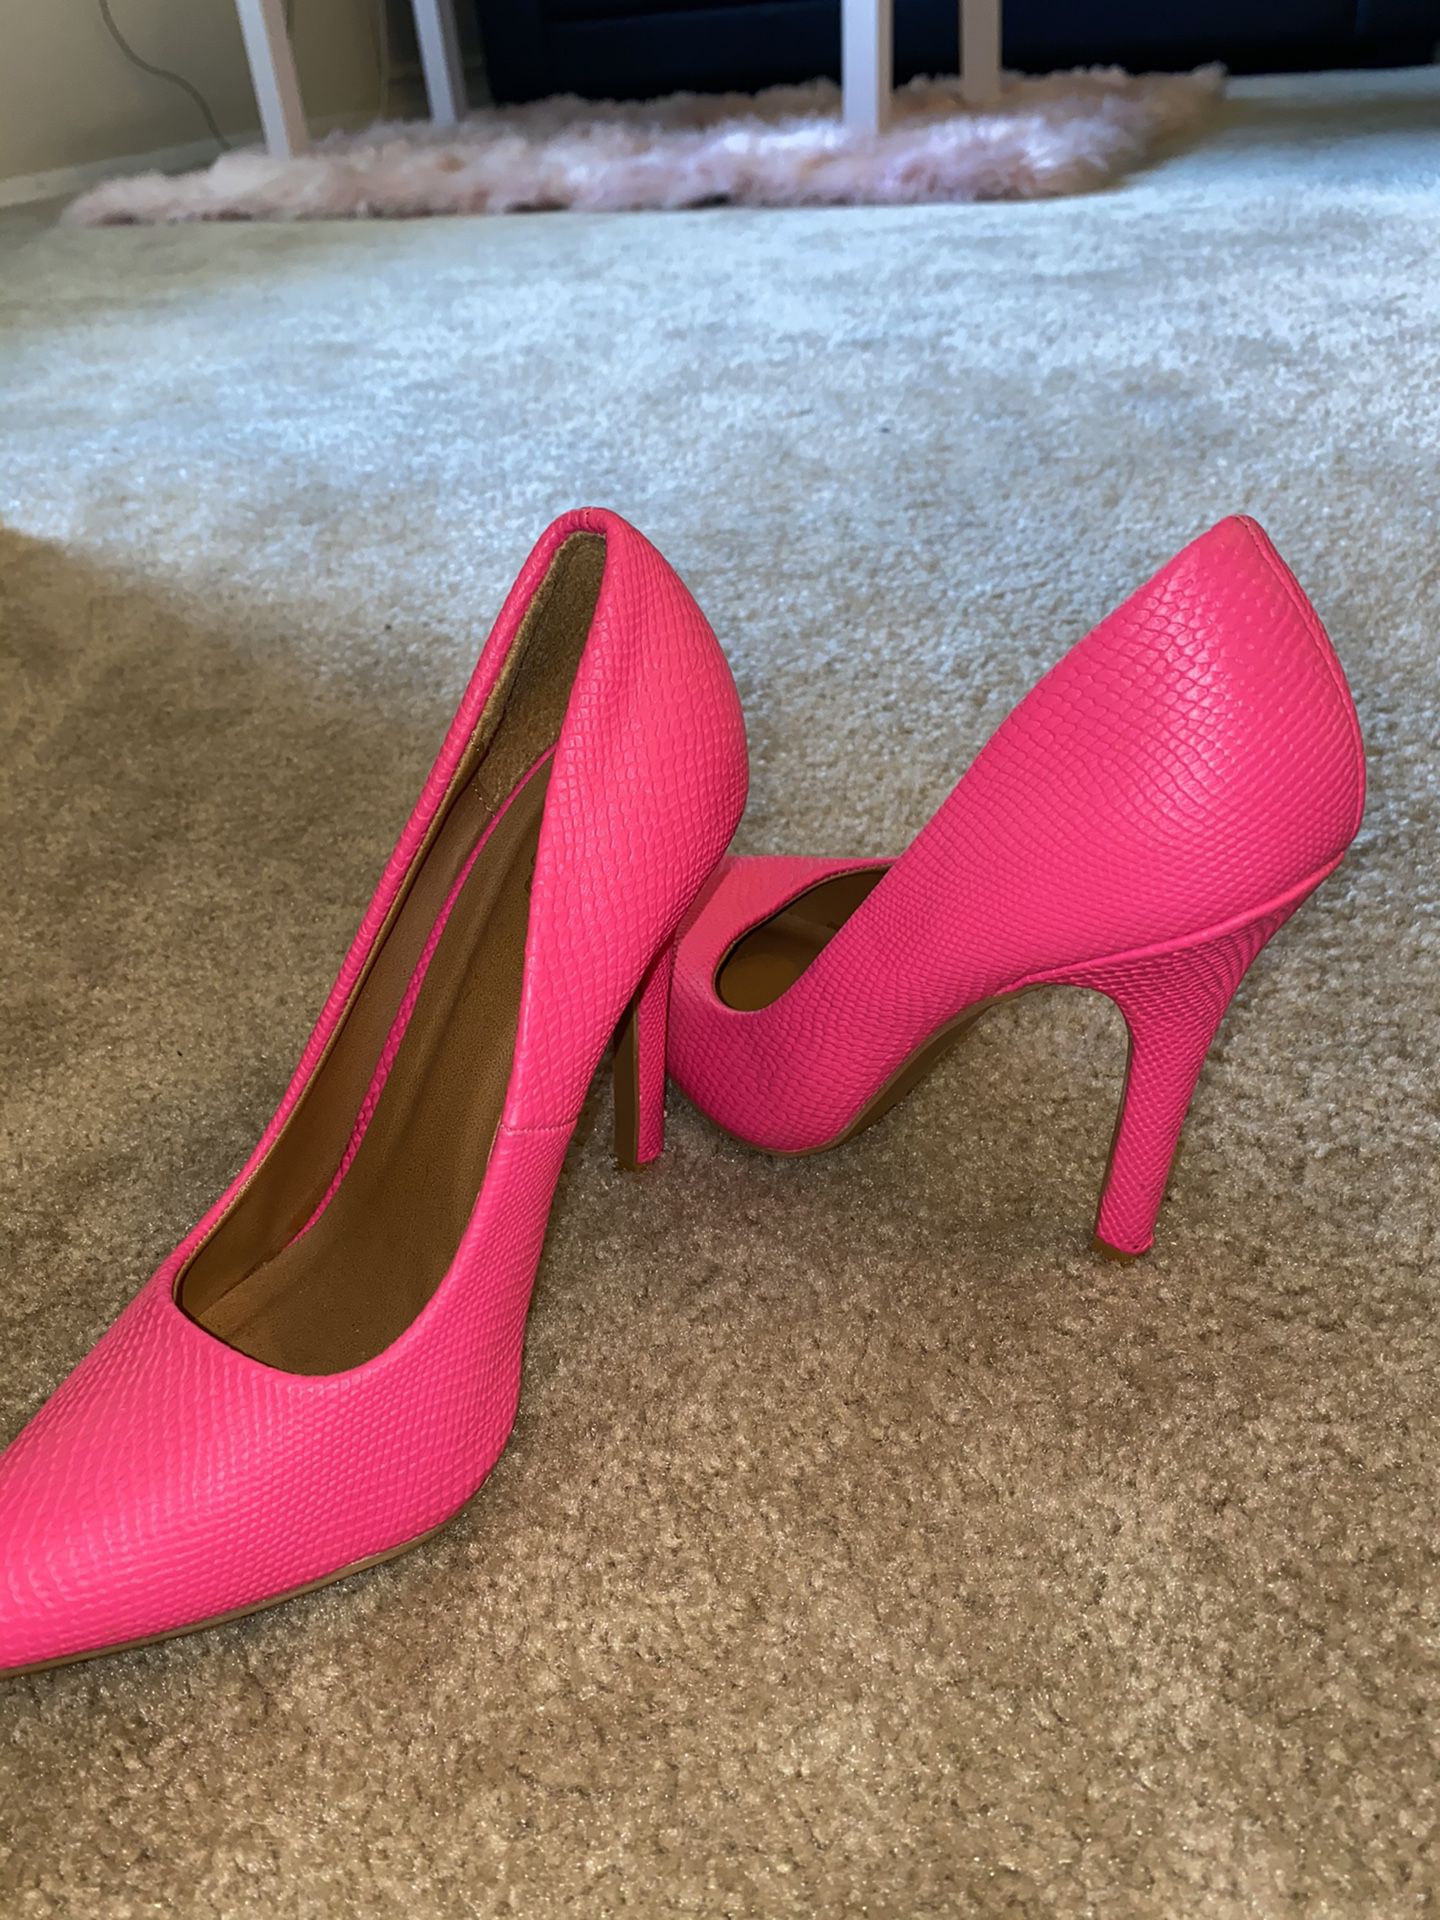 Hot Pink Stilettos size 7/8